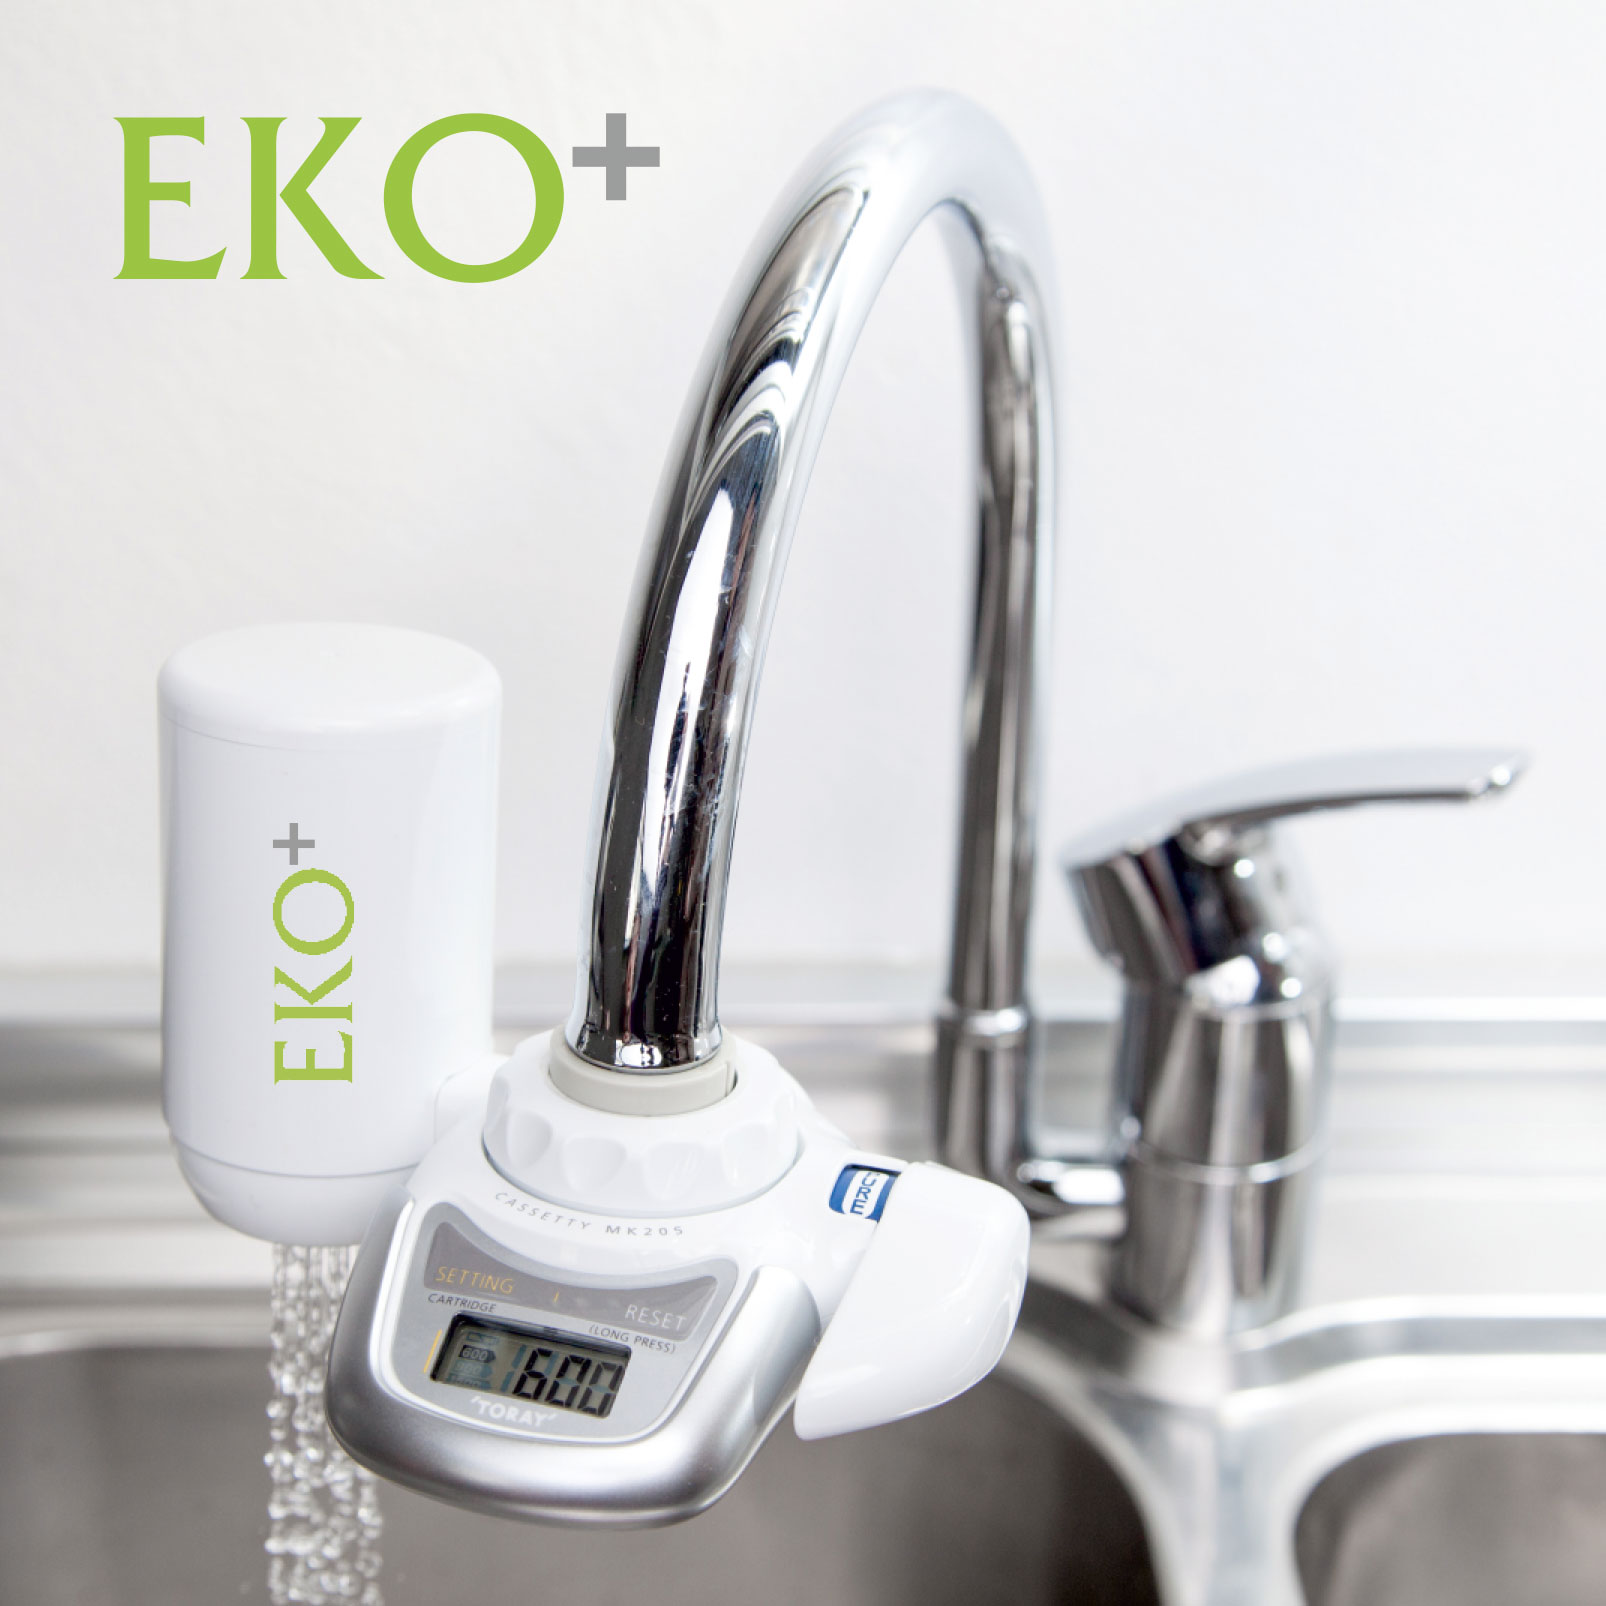 EKO+ Sauberes und hochwertiges Wasser für daheim und unterwegs